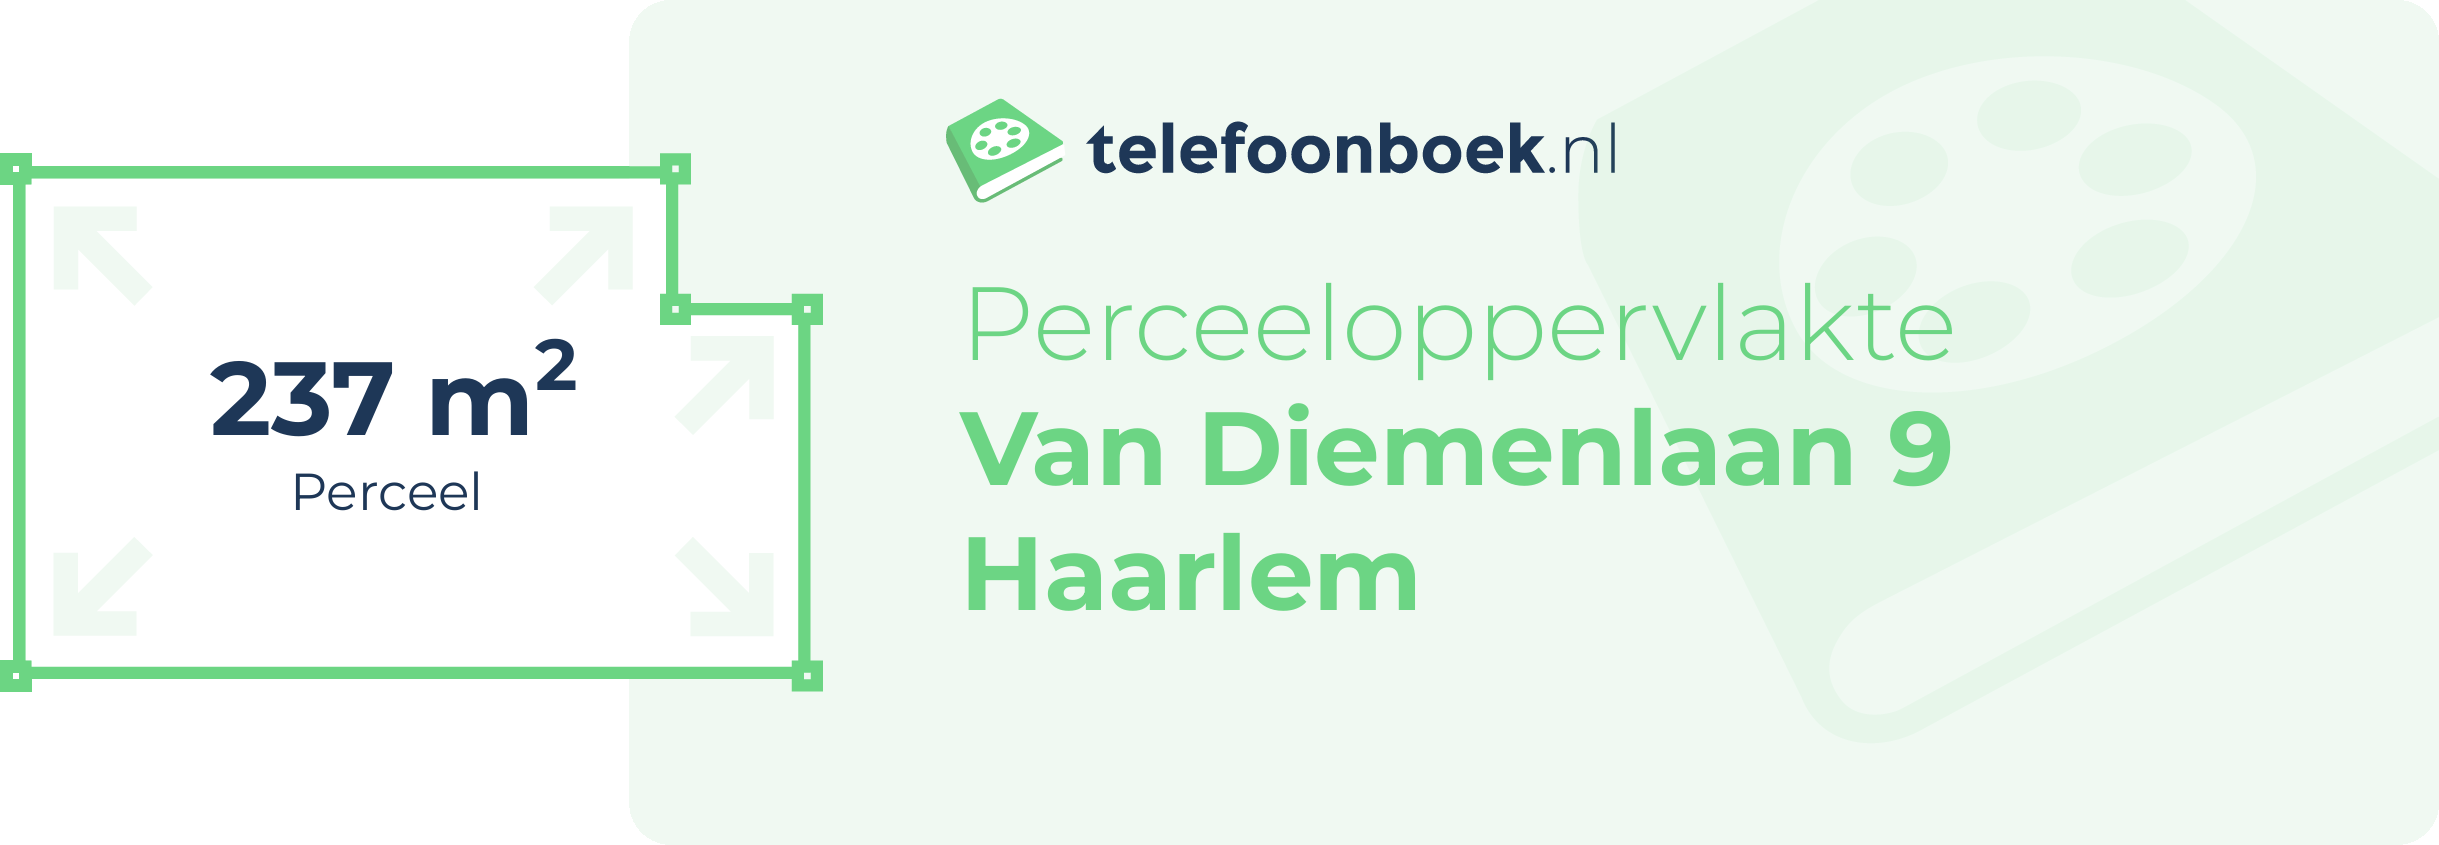 Perceeloppervlakte Van Diemenlaan 9 Haarlem